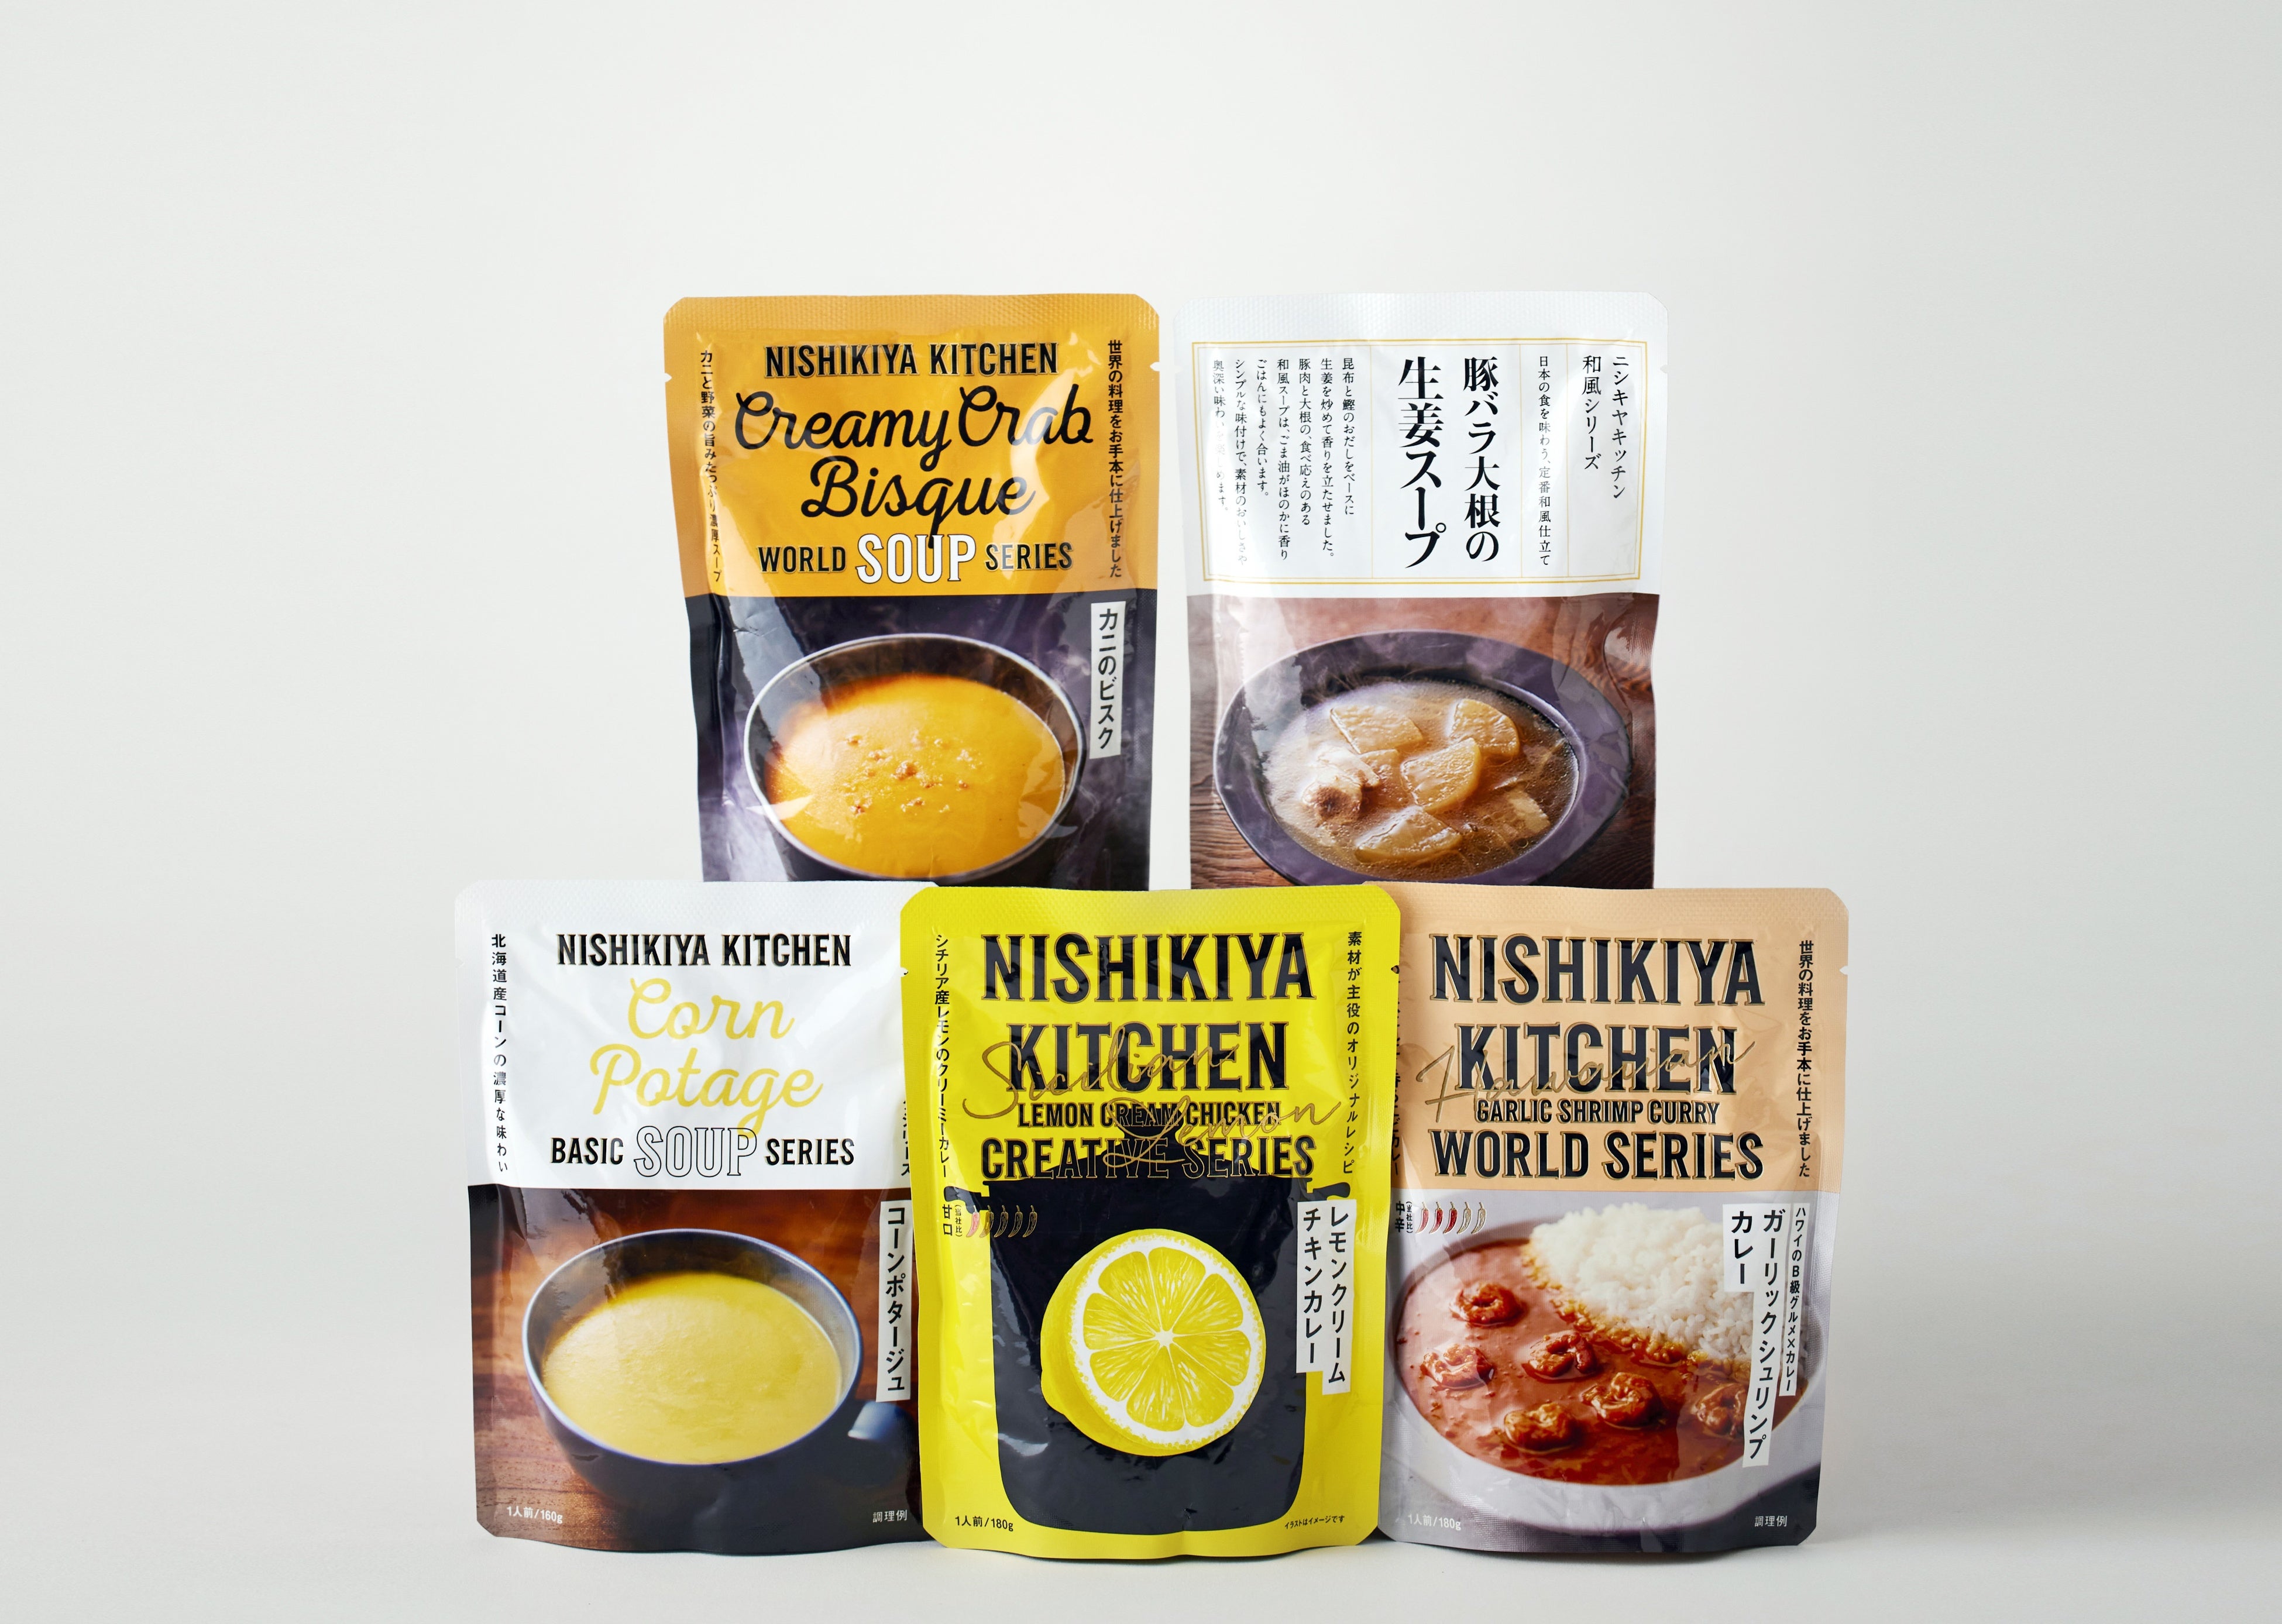 レトルトカレーを中心に約120種類のレトルト食品を販売するNISHIKIYA KITCHENが７月8日よりNEWoMan新宿へ出店